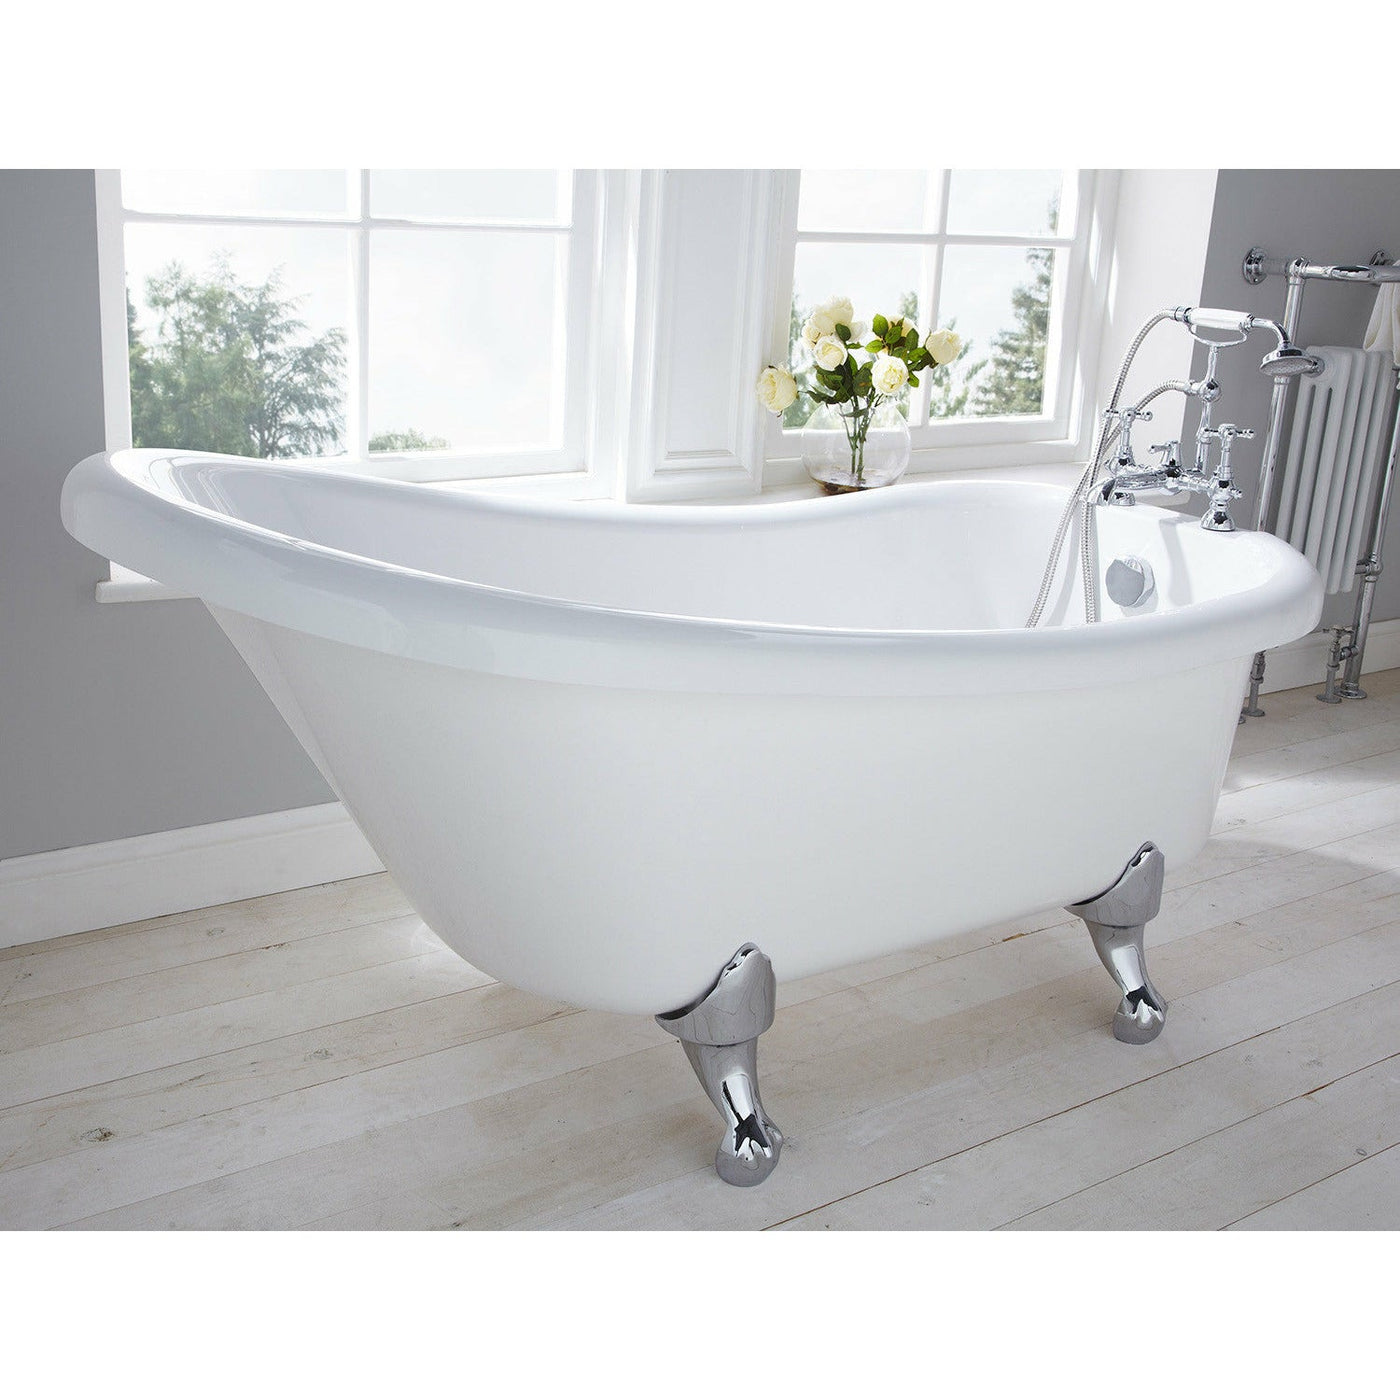 Frontline White Camden Traditional Freestanding Slipper Bath - White - Letta London - 